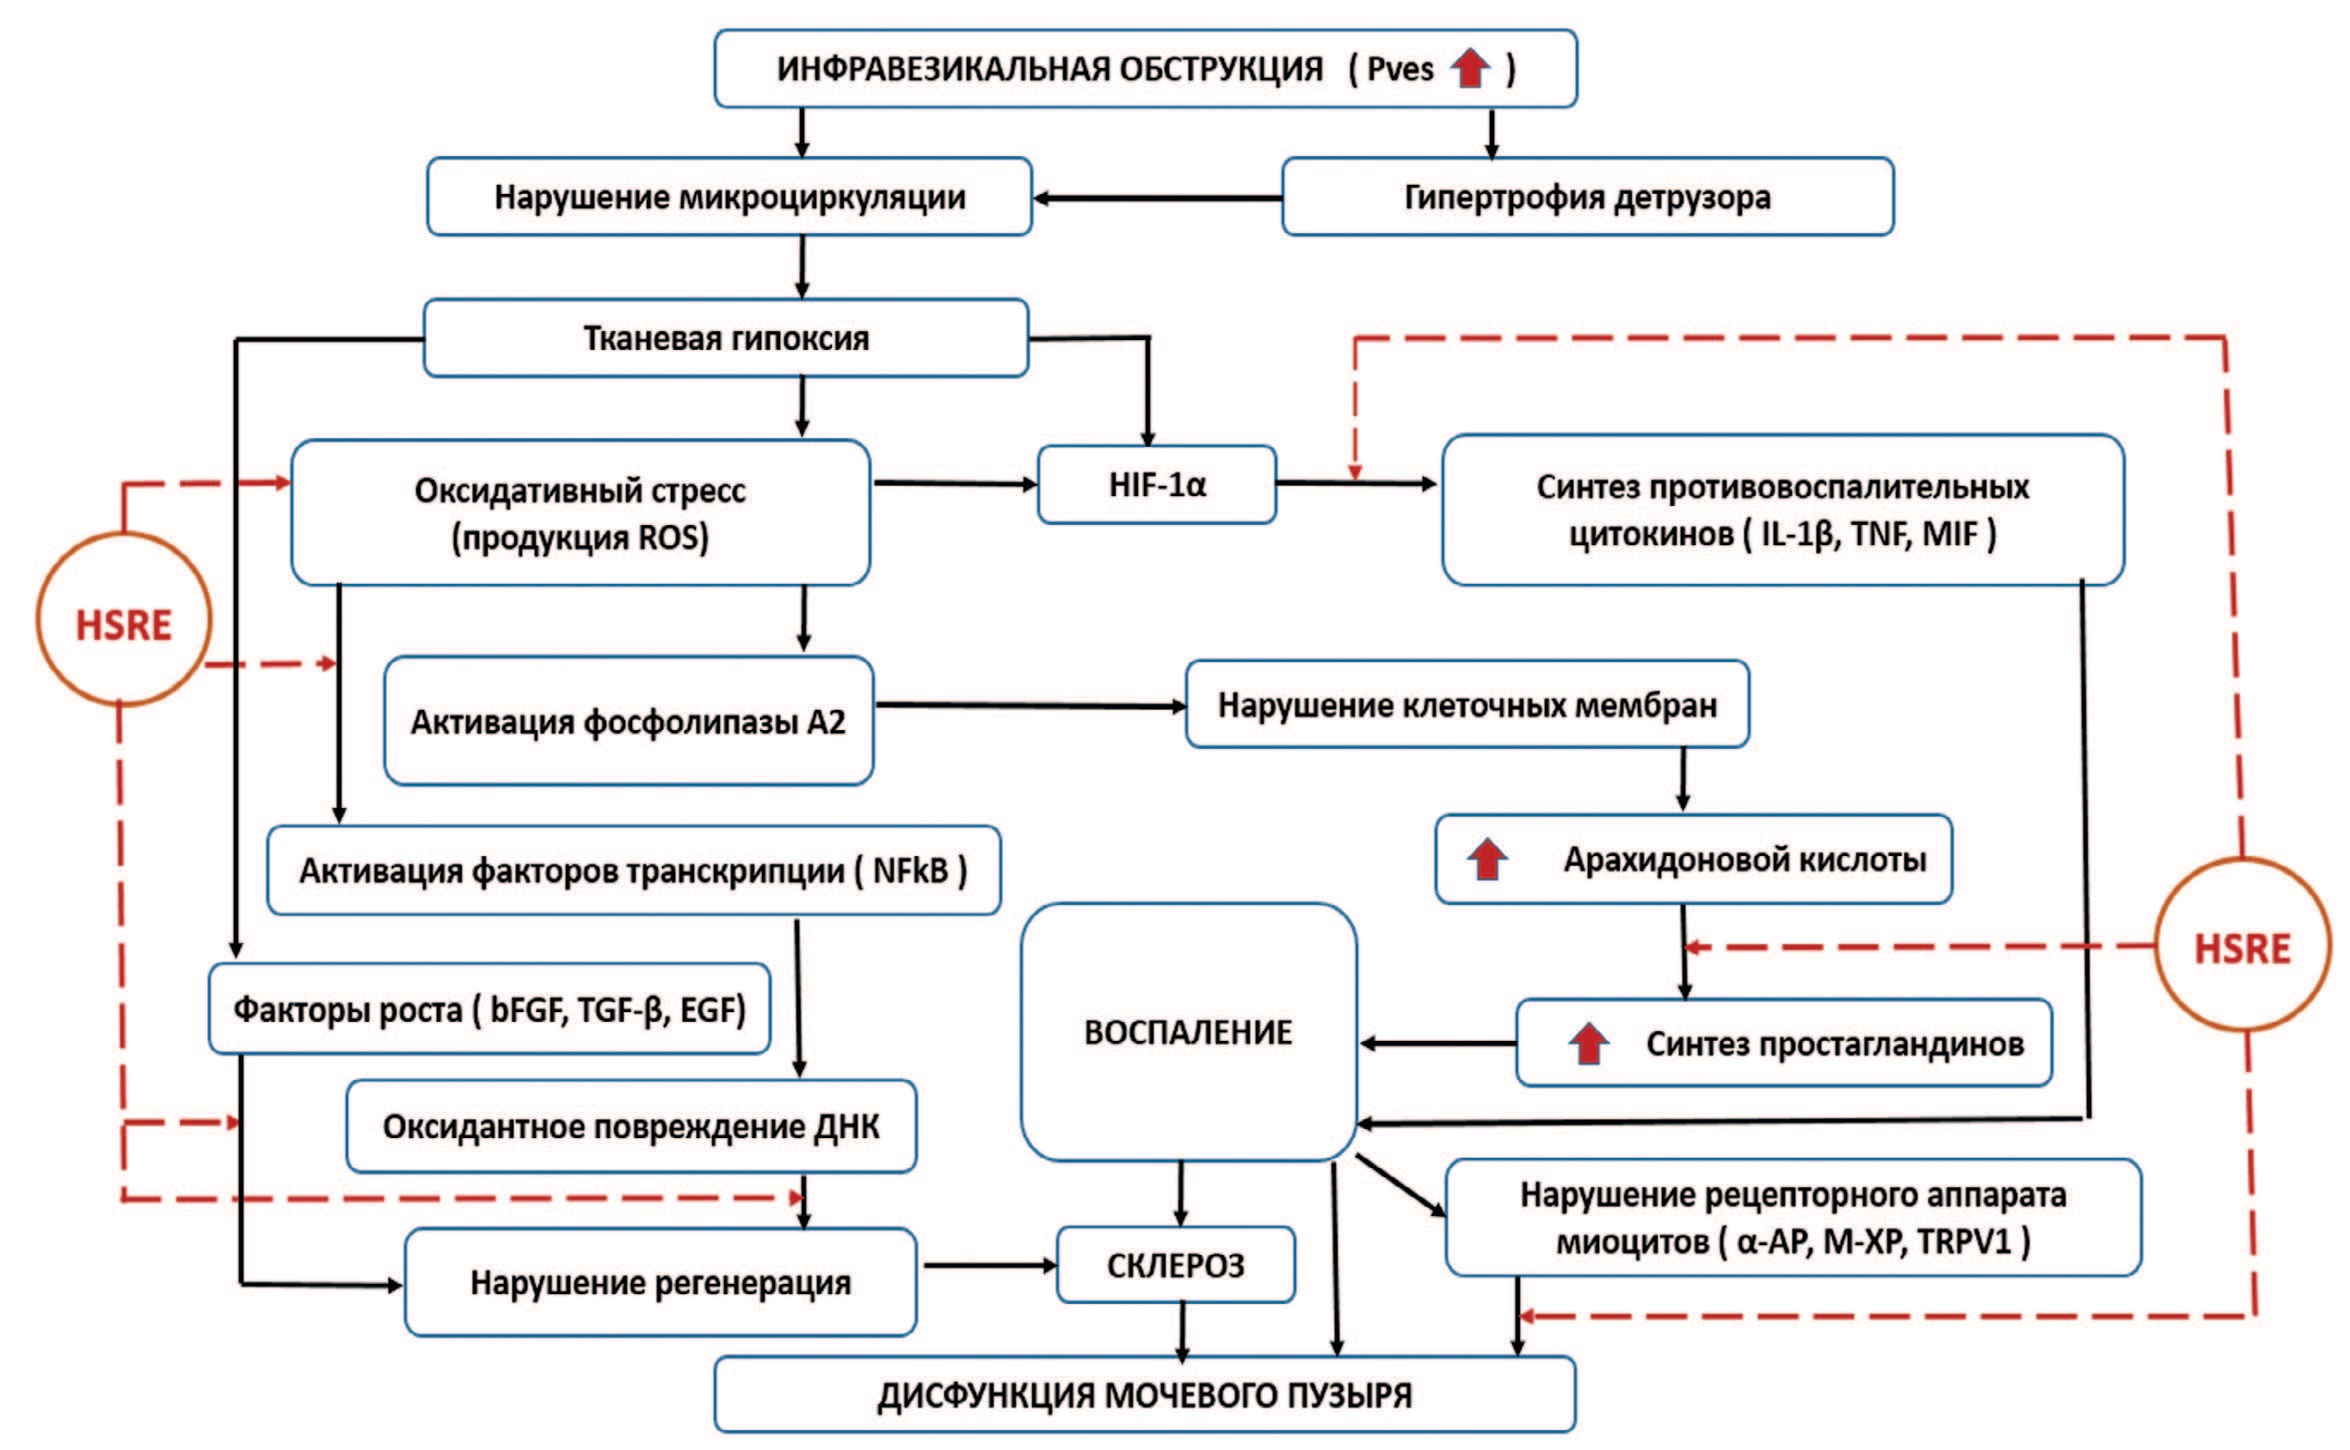 Схема возможного влияния HSRE на звенья патогенеза дисфункции мочевого пузыря при ИВО